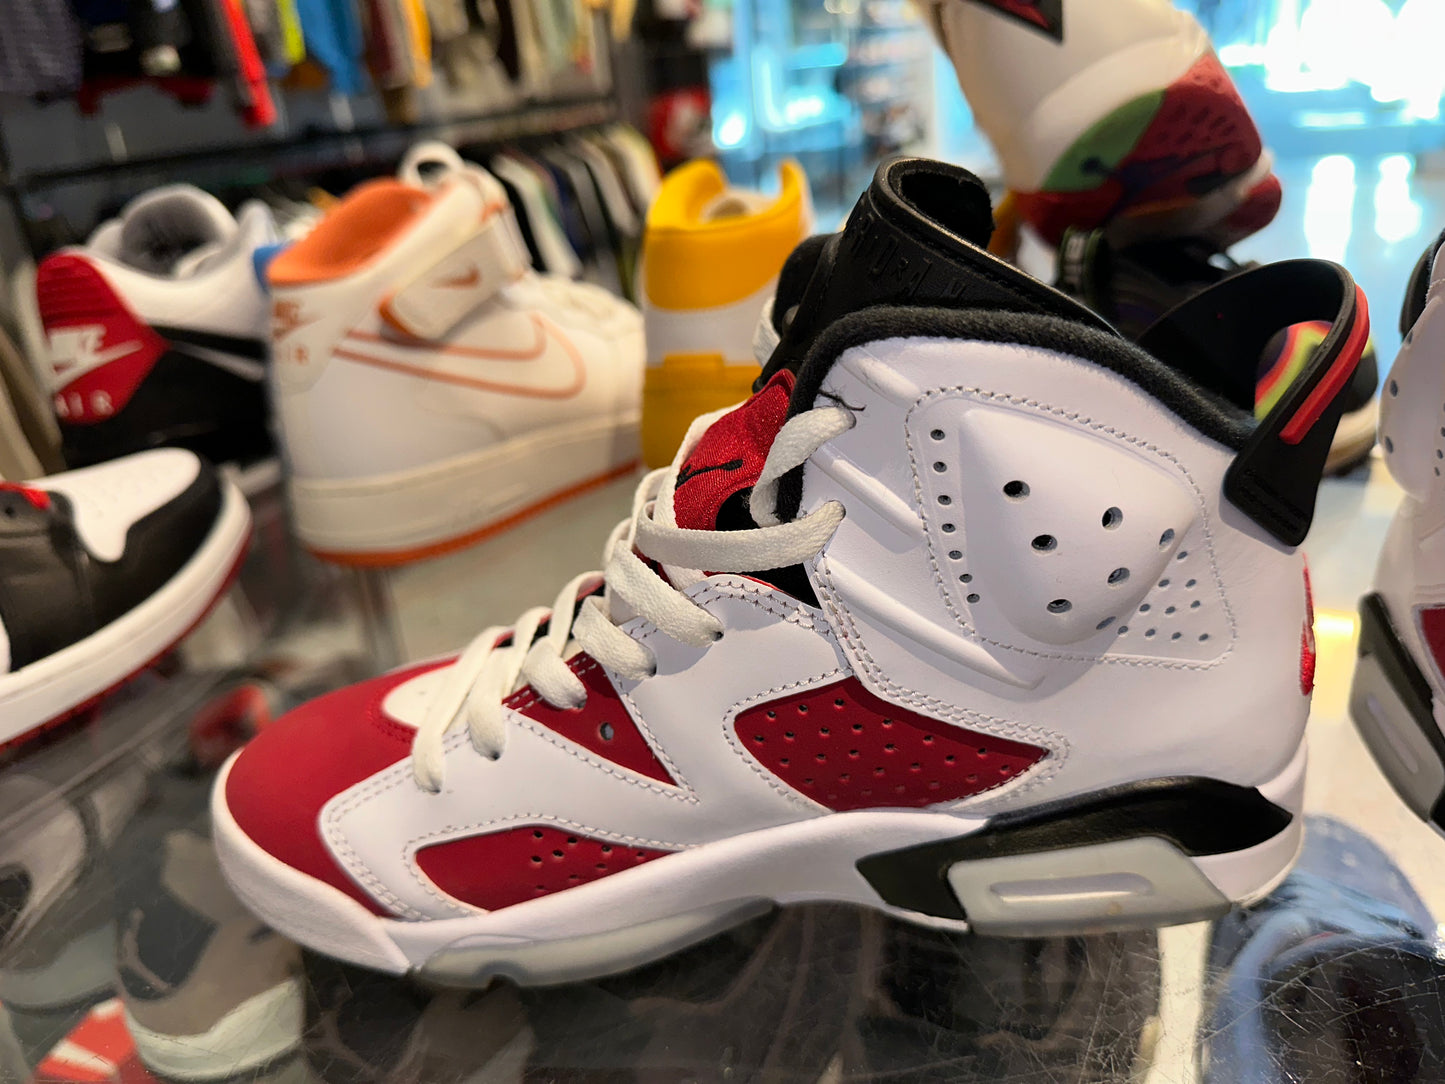 Size 5.5 Air Jordan 6 “Carmine” (Mall)